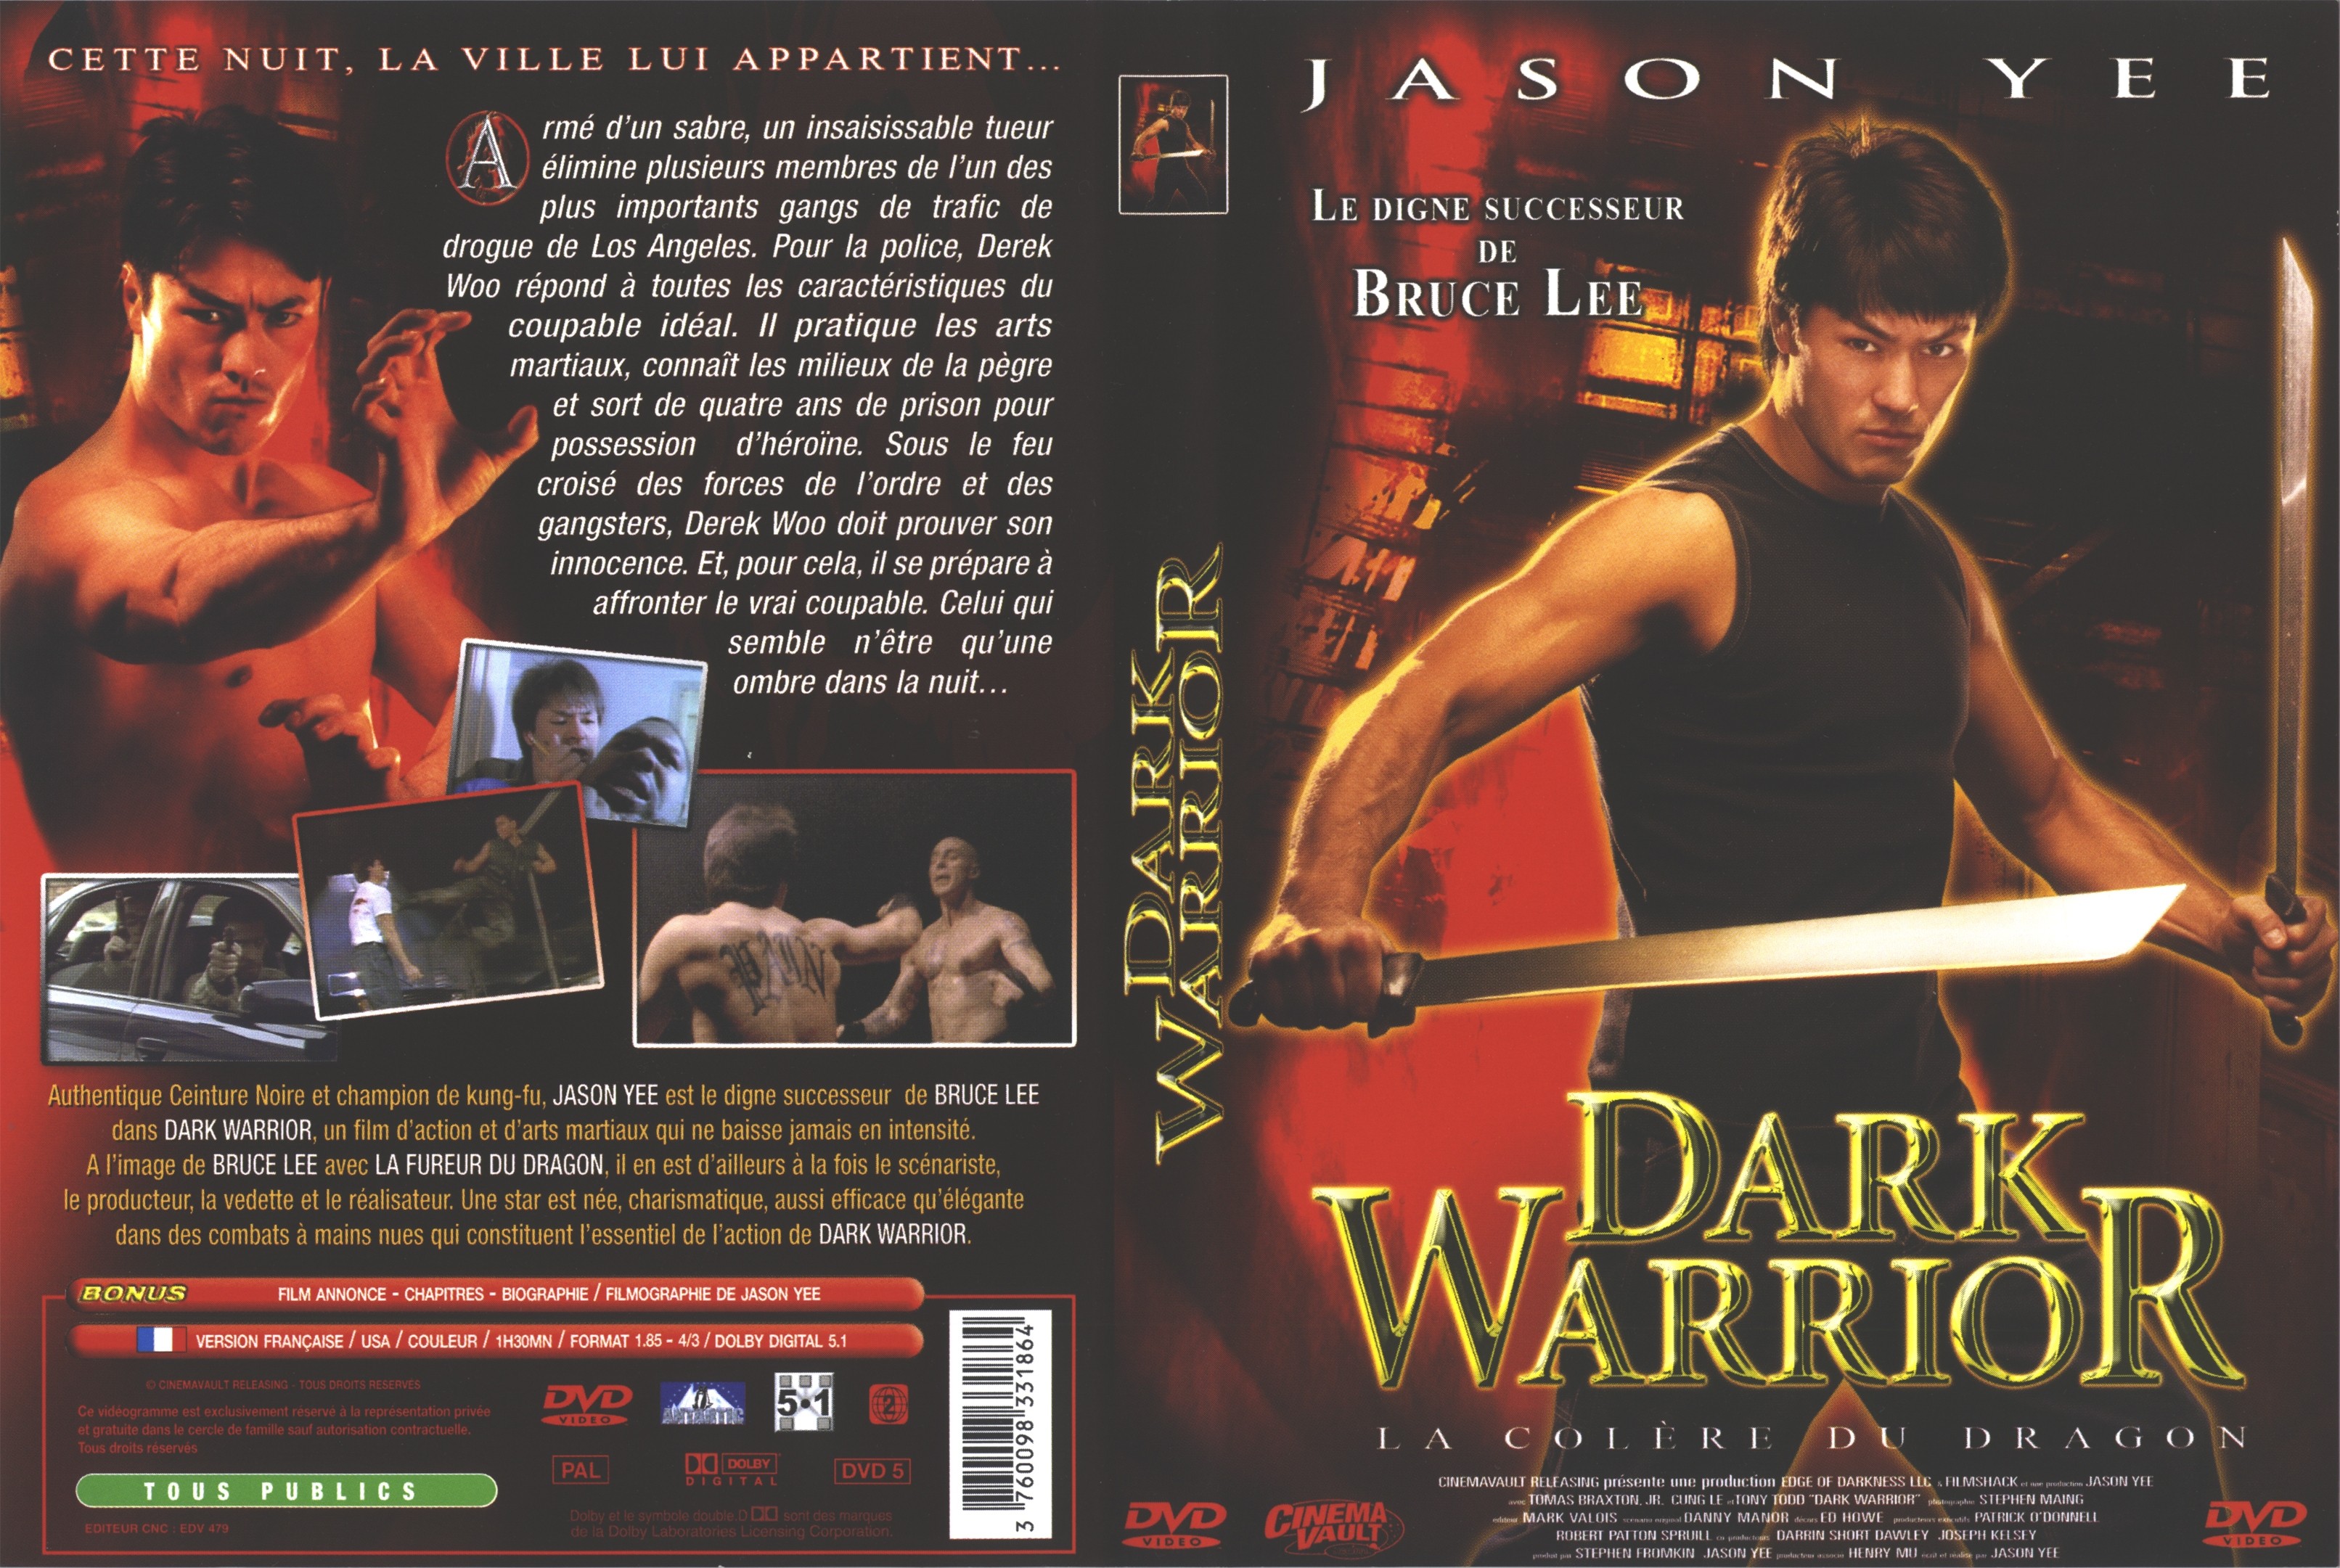 Jaquette DVD Dark warrior